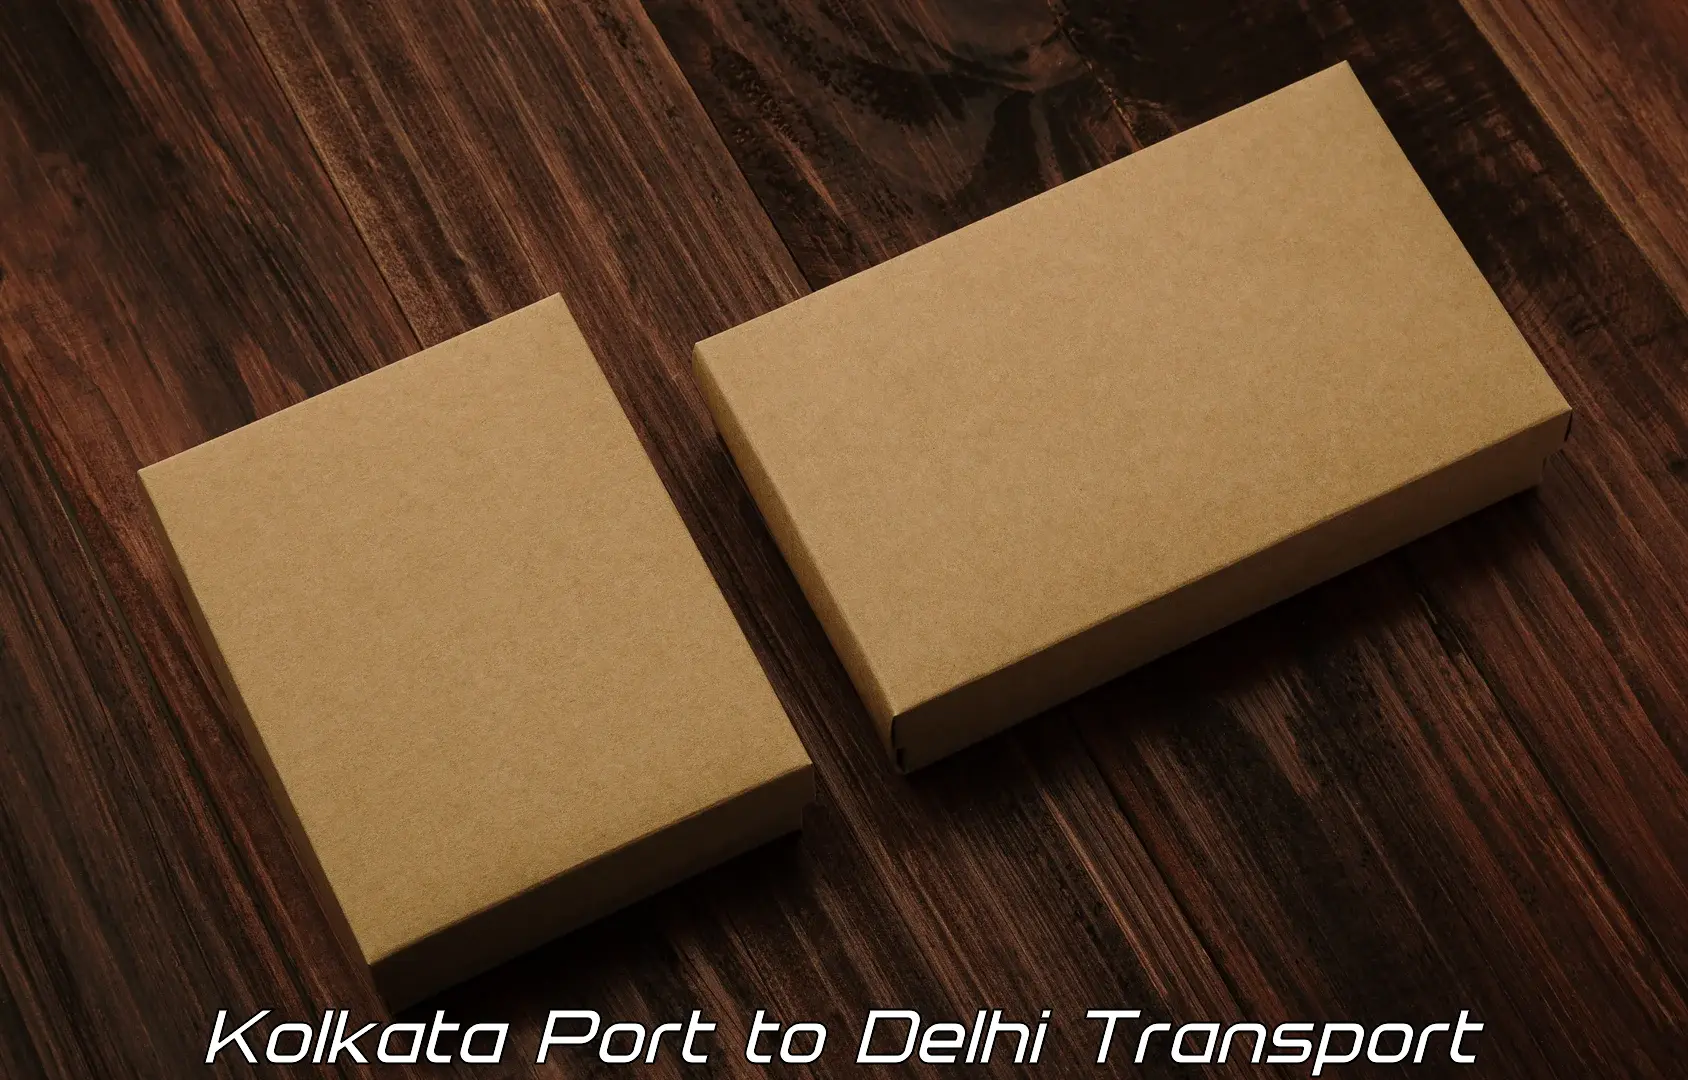 Door to door transport services Kolkata Port to Delhi